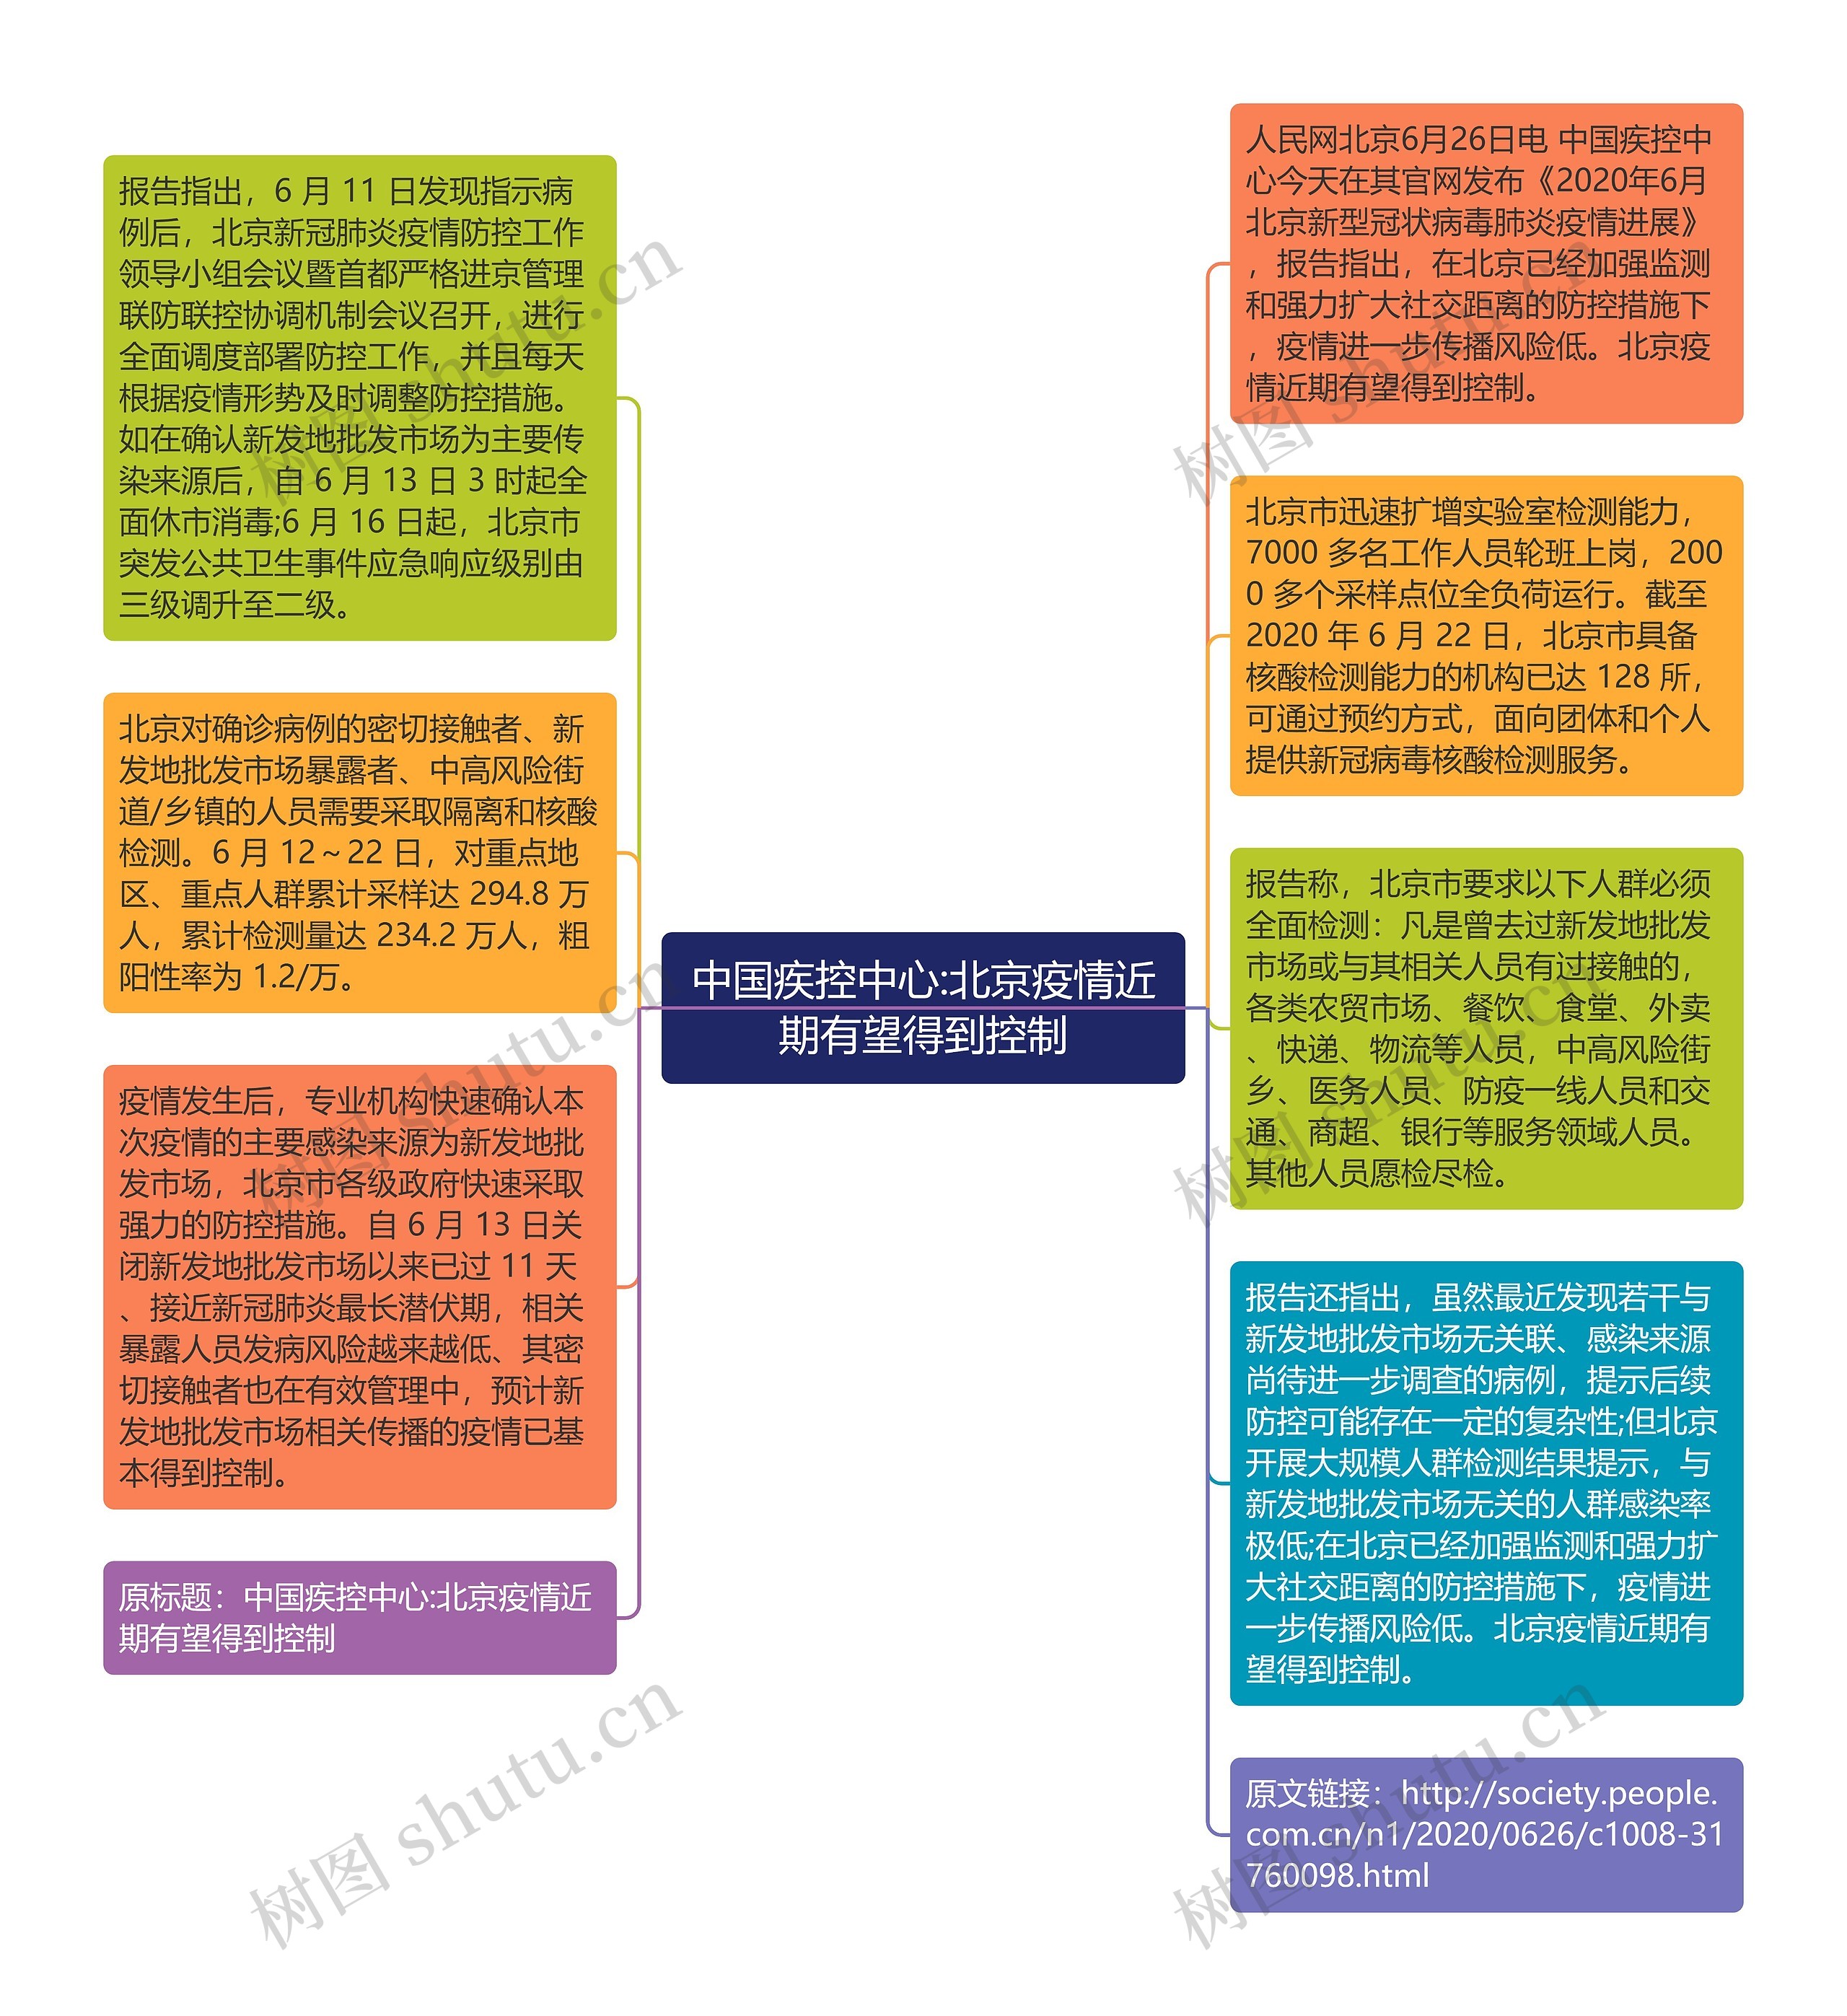 中国疾控中心:北京疫情近期有望得到控制思维导图